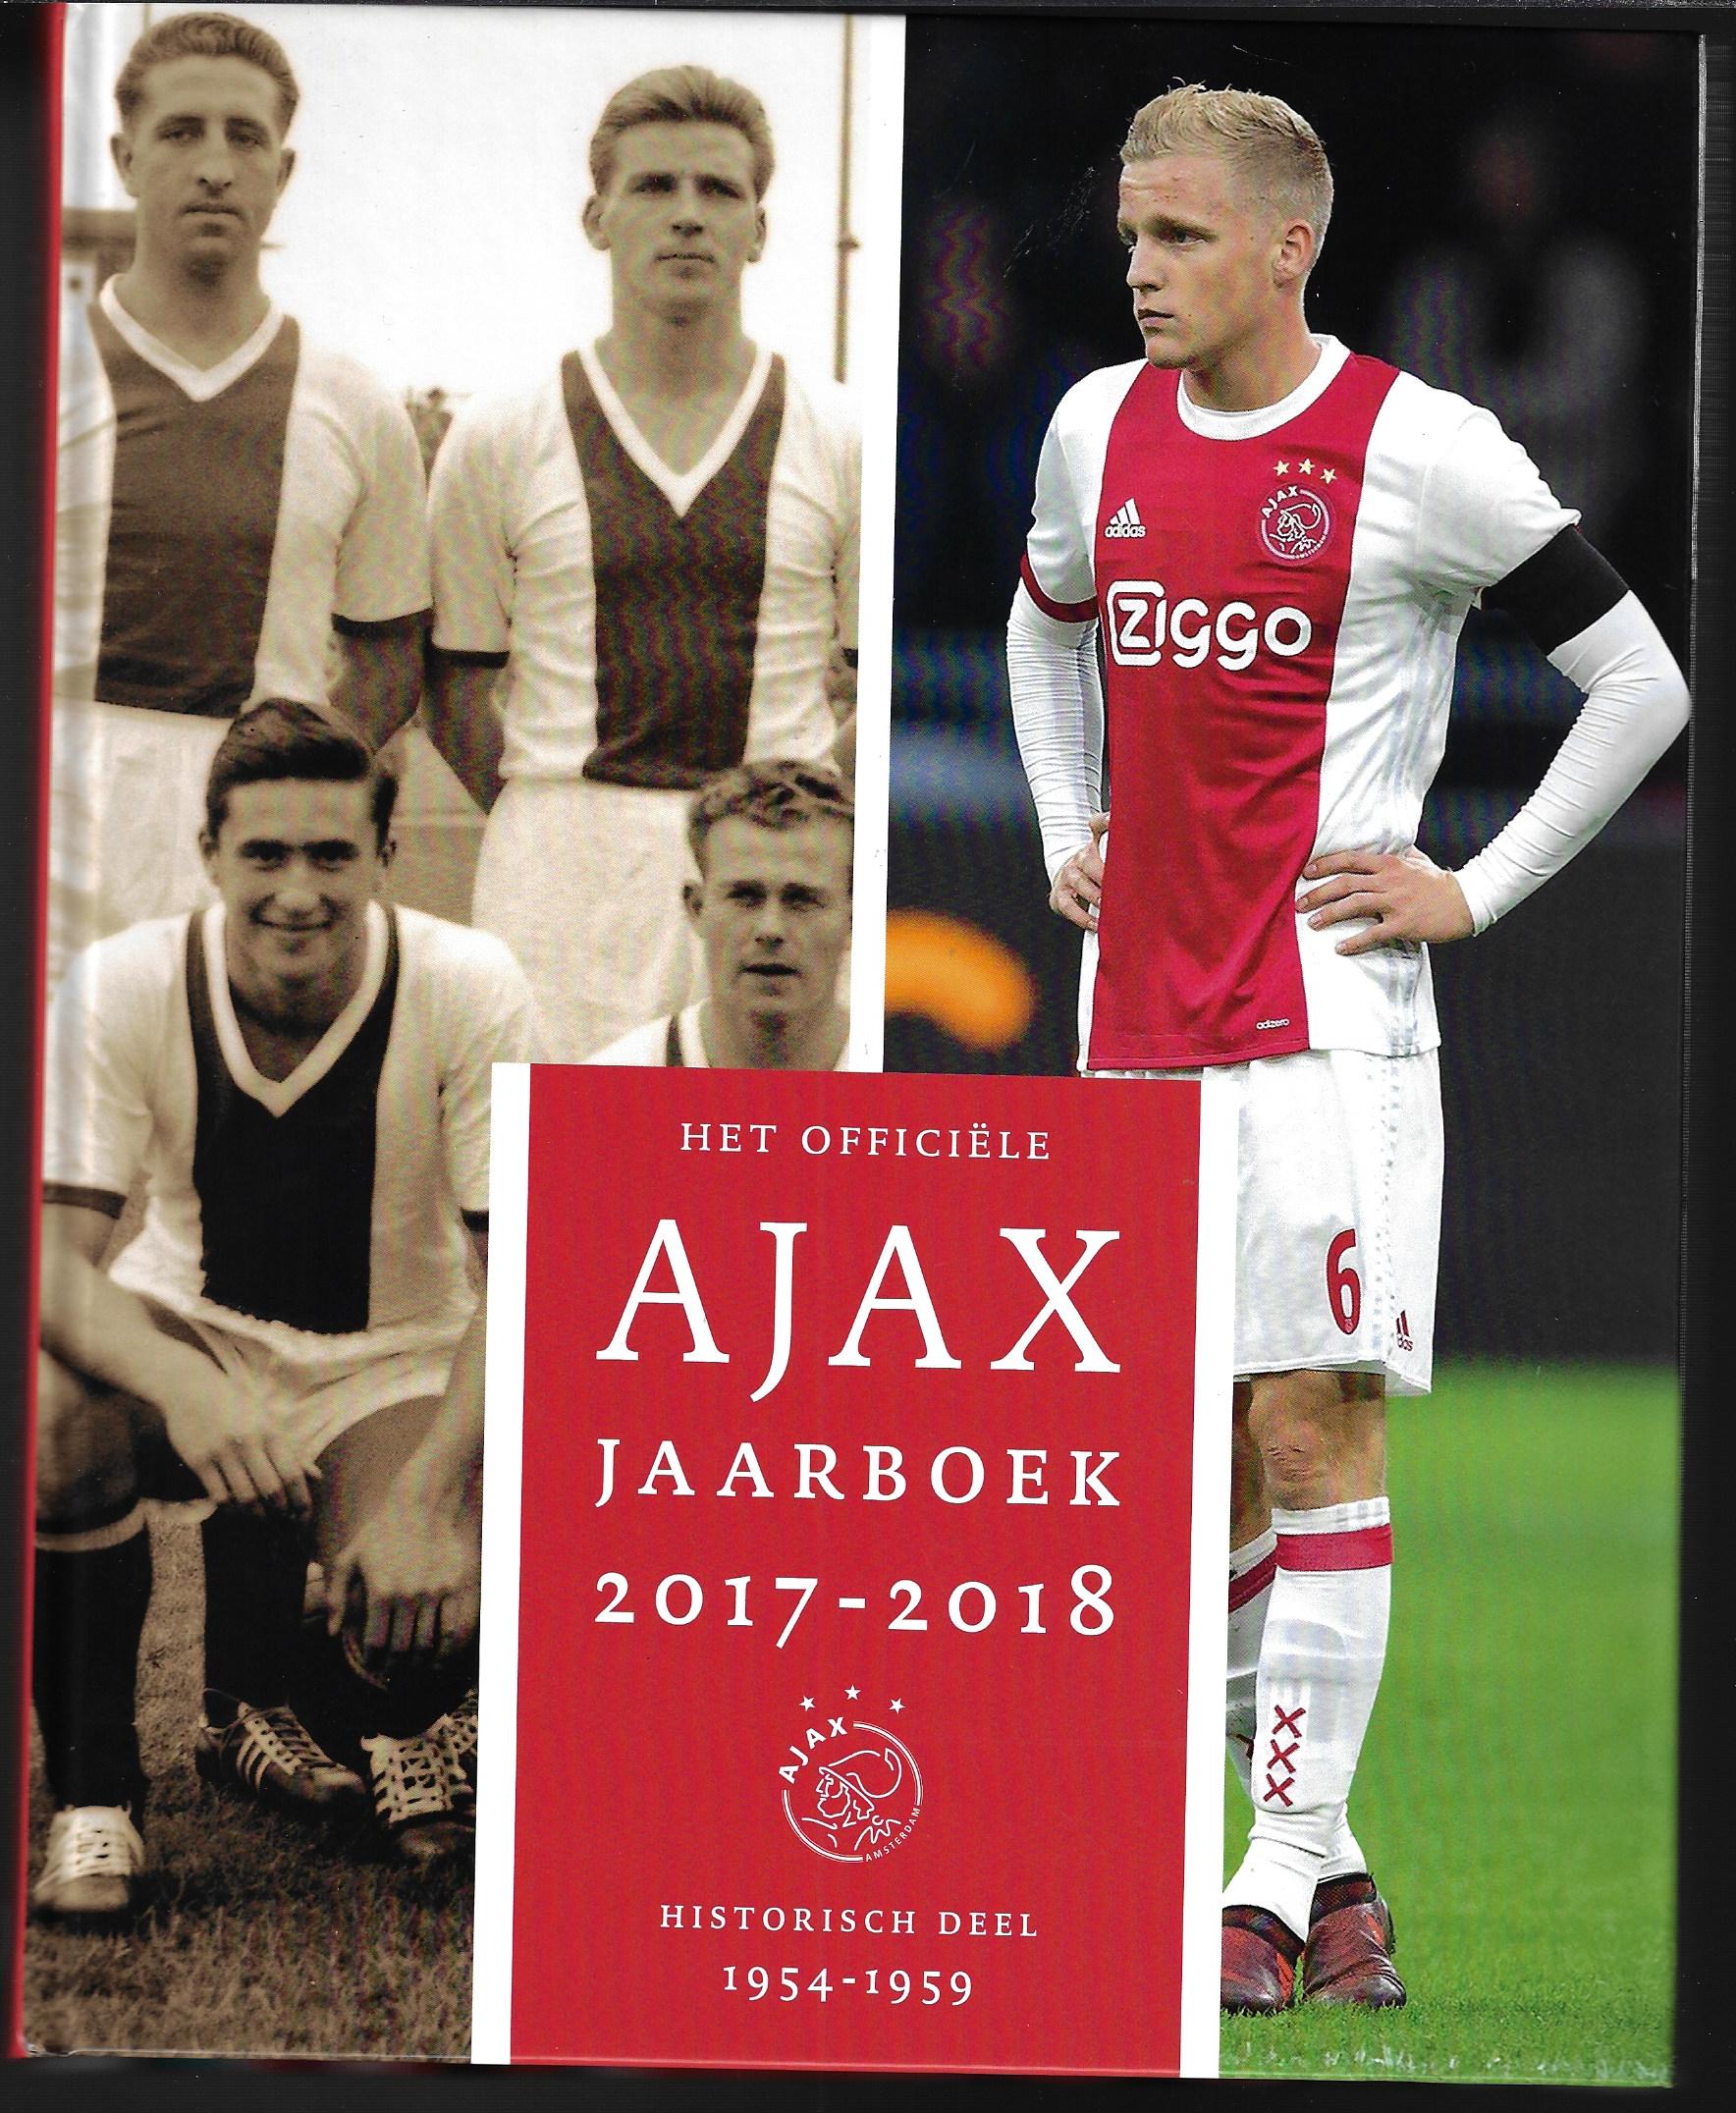 Diverse - Het officiële Ajax jaarboek 2017-2018 -Historisch deel 1954-1959